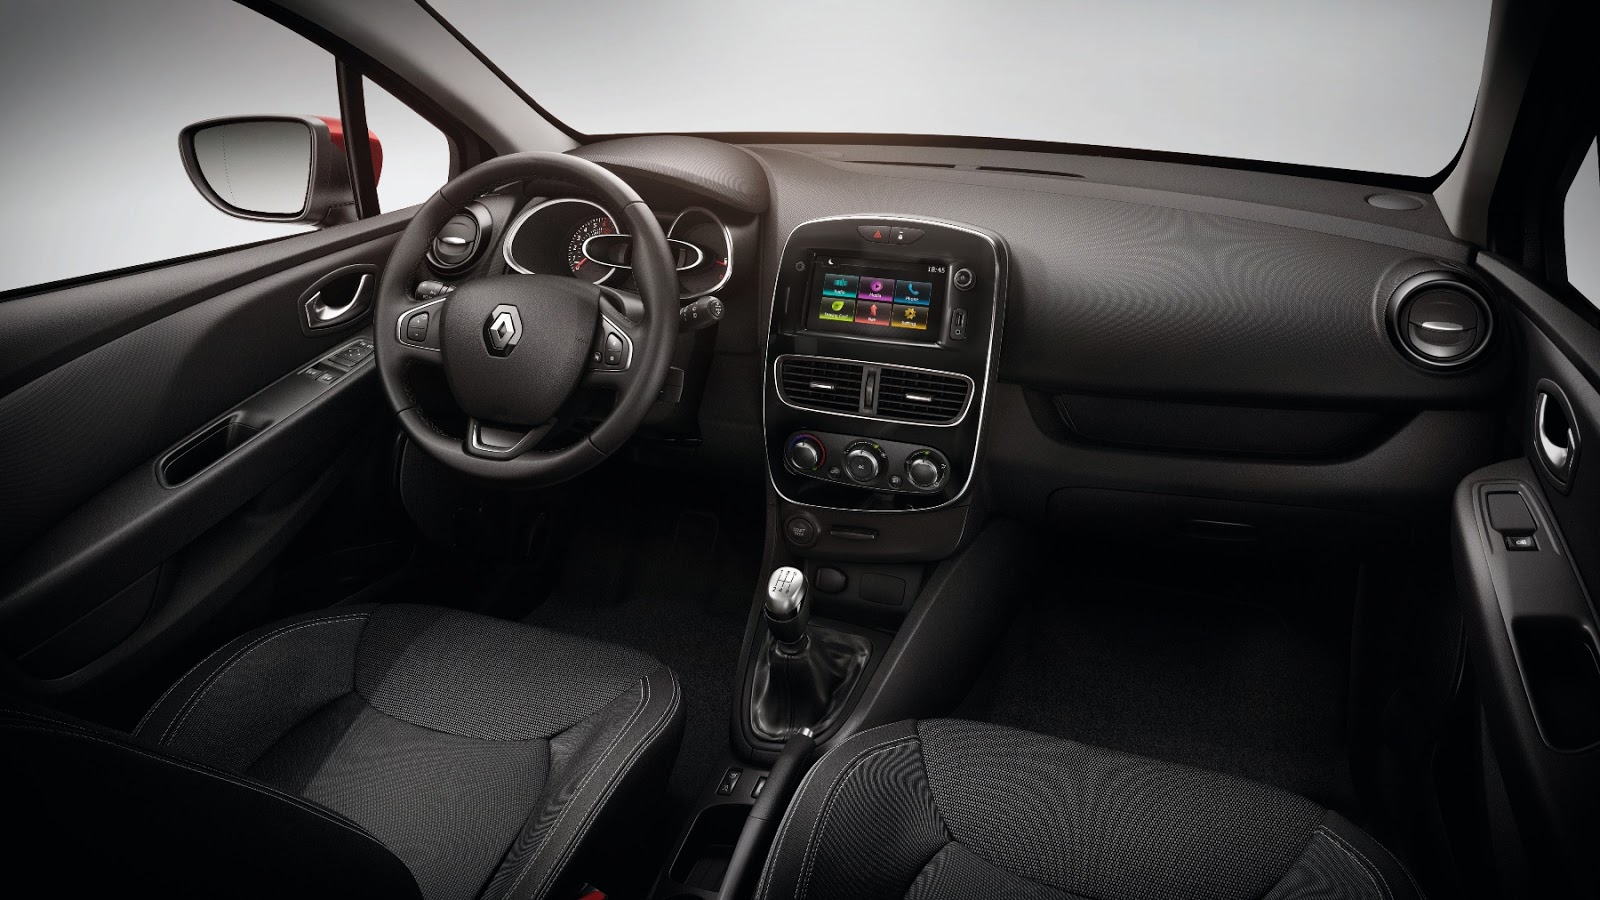 00111514 Εργασία και χαρά με το νέο Renault Clio Business